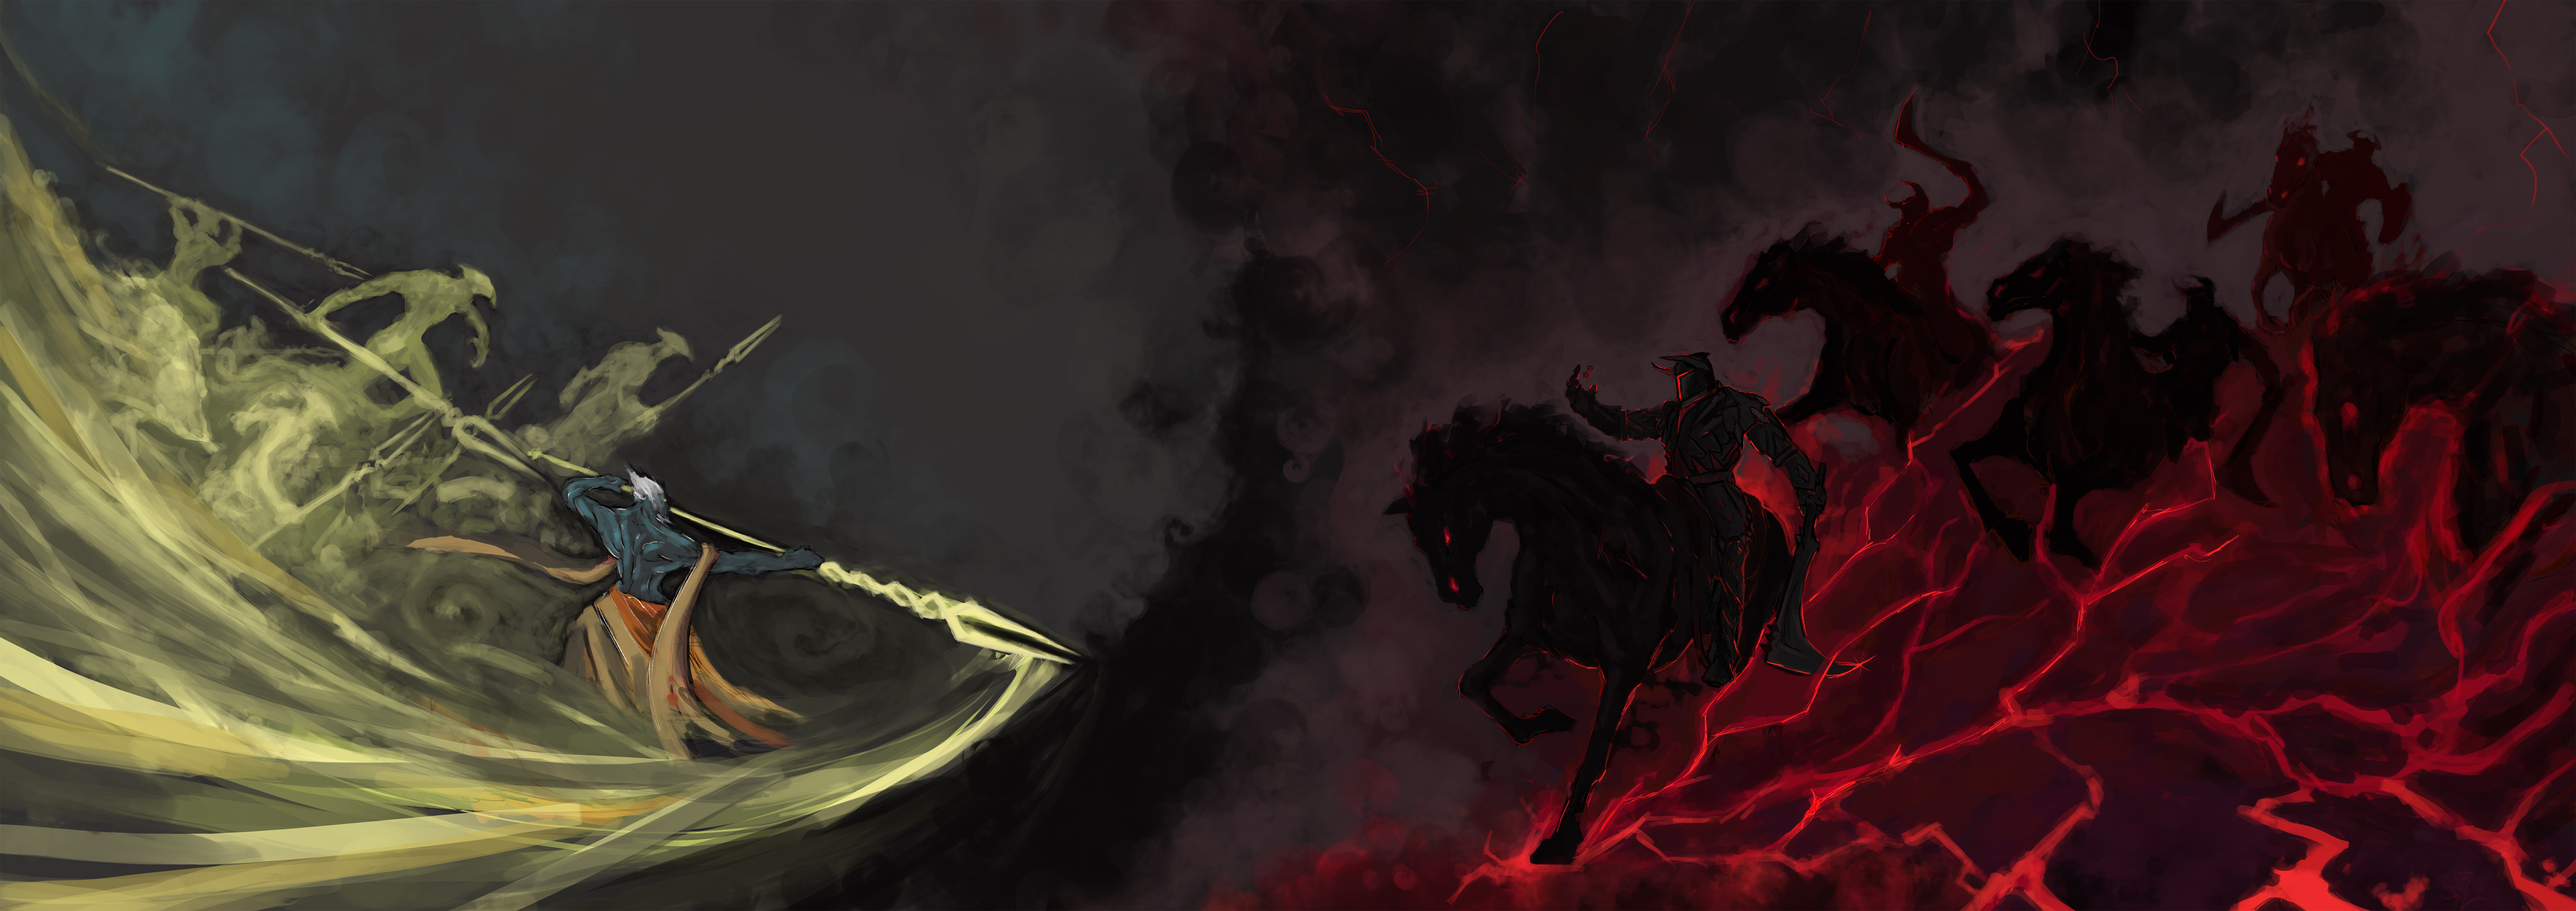 sfondo per 2 monitor,cg artwork,demone,cavallo,buio,illustrazione